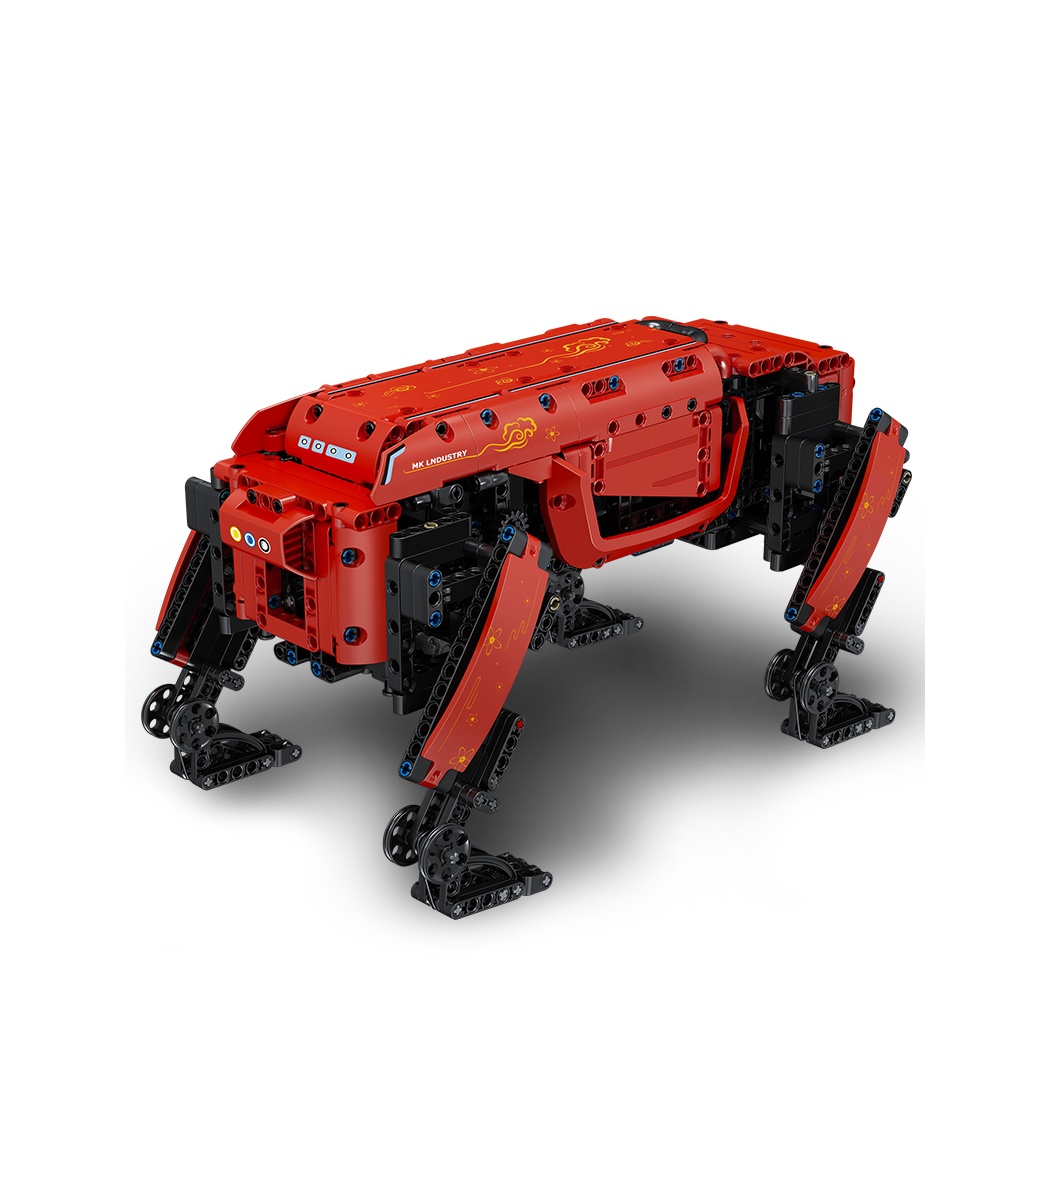 https://www.buildingtoystore.com/15132-superlarge_default/mould-king-15067-mk-dynamics-red-robot-dog-remote-control-building-blocks-toy-set.jpg